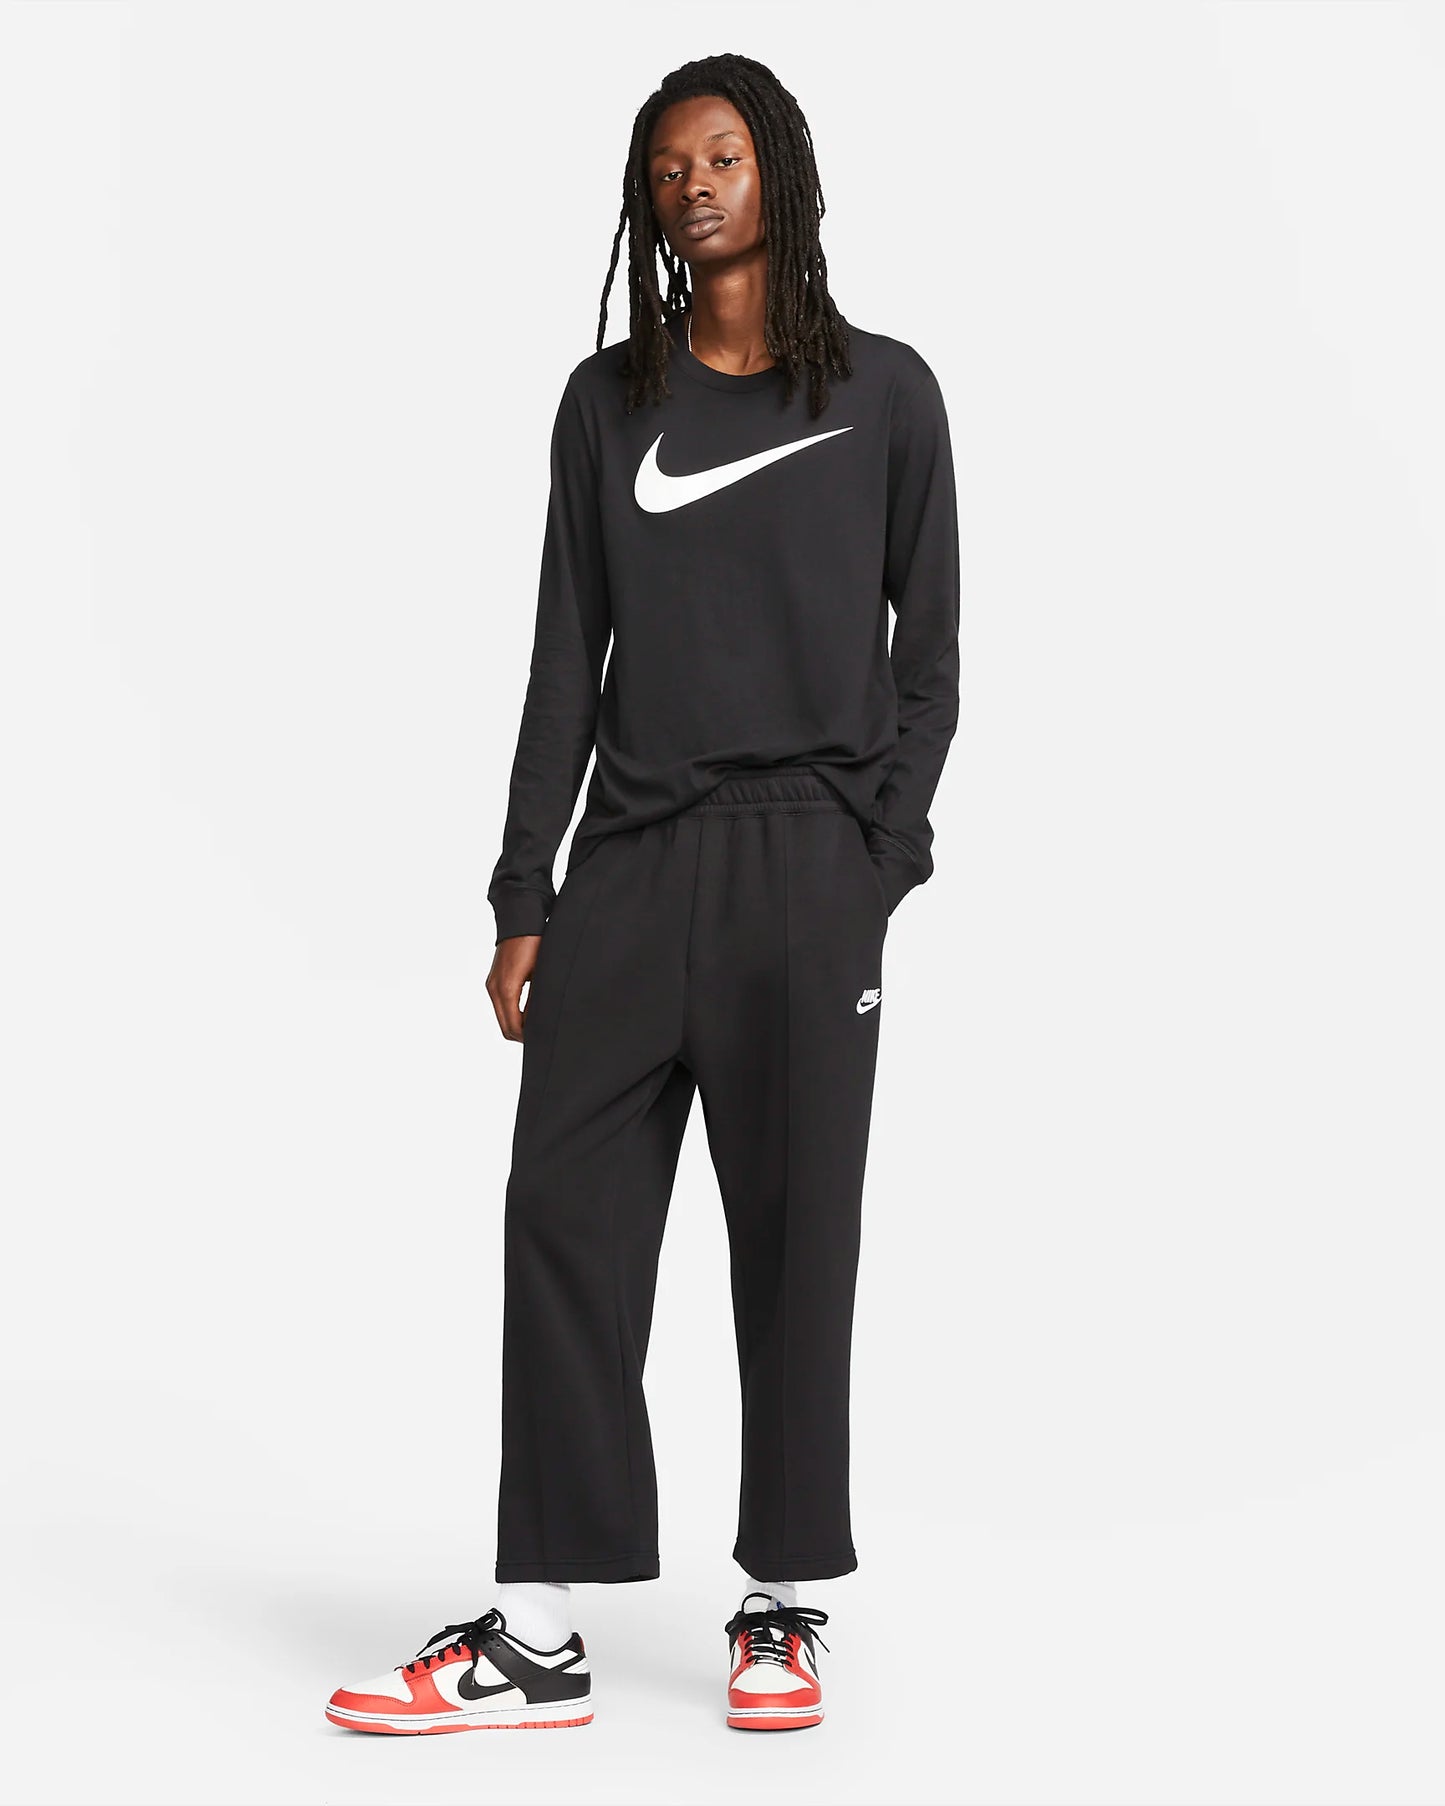 Nike Men's Sportswear Long-Sleeve T-Shirt, Black